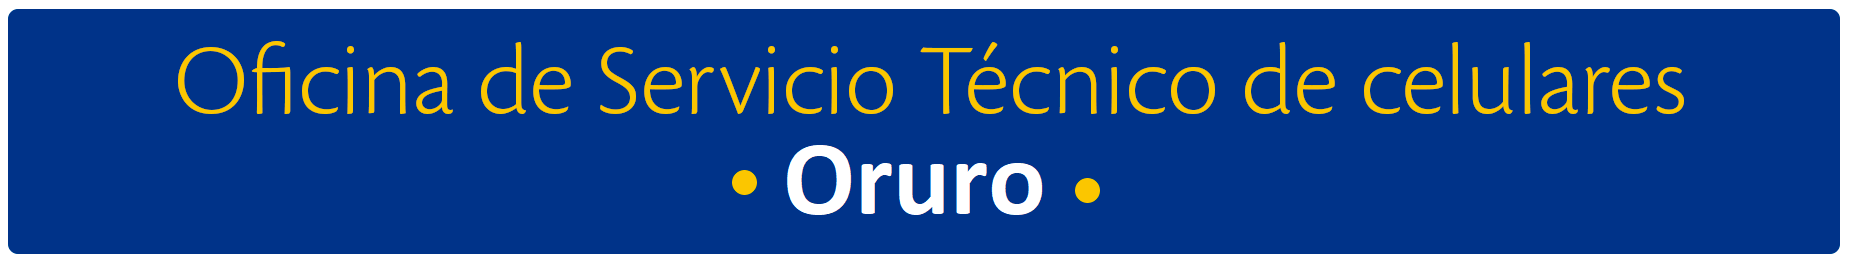 aw-titulo_Oruro_servicio_tecnico.png